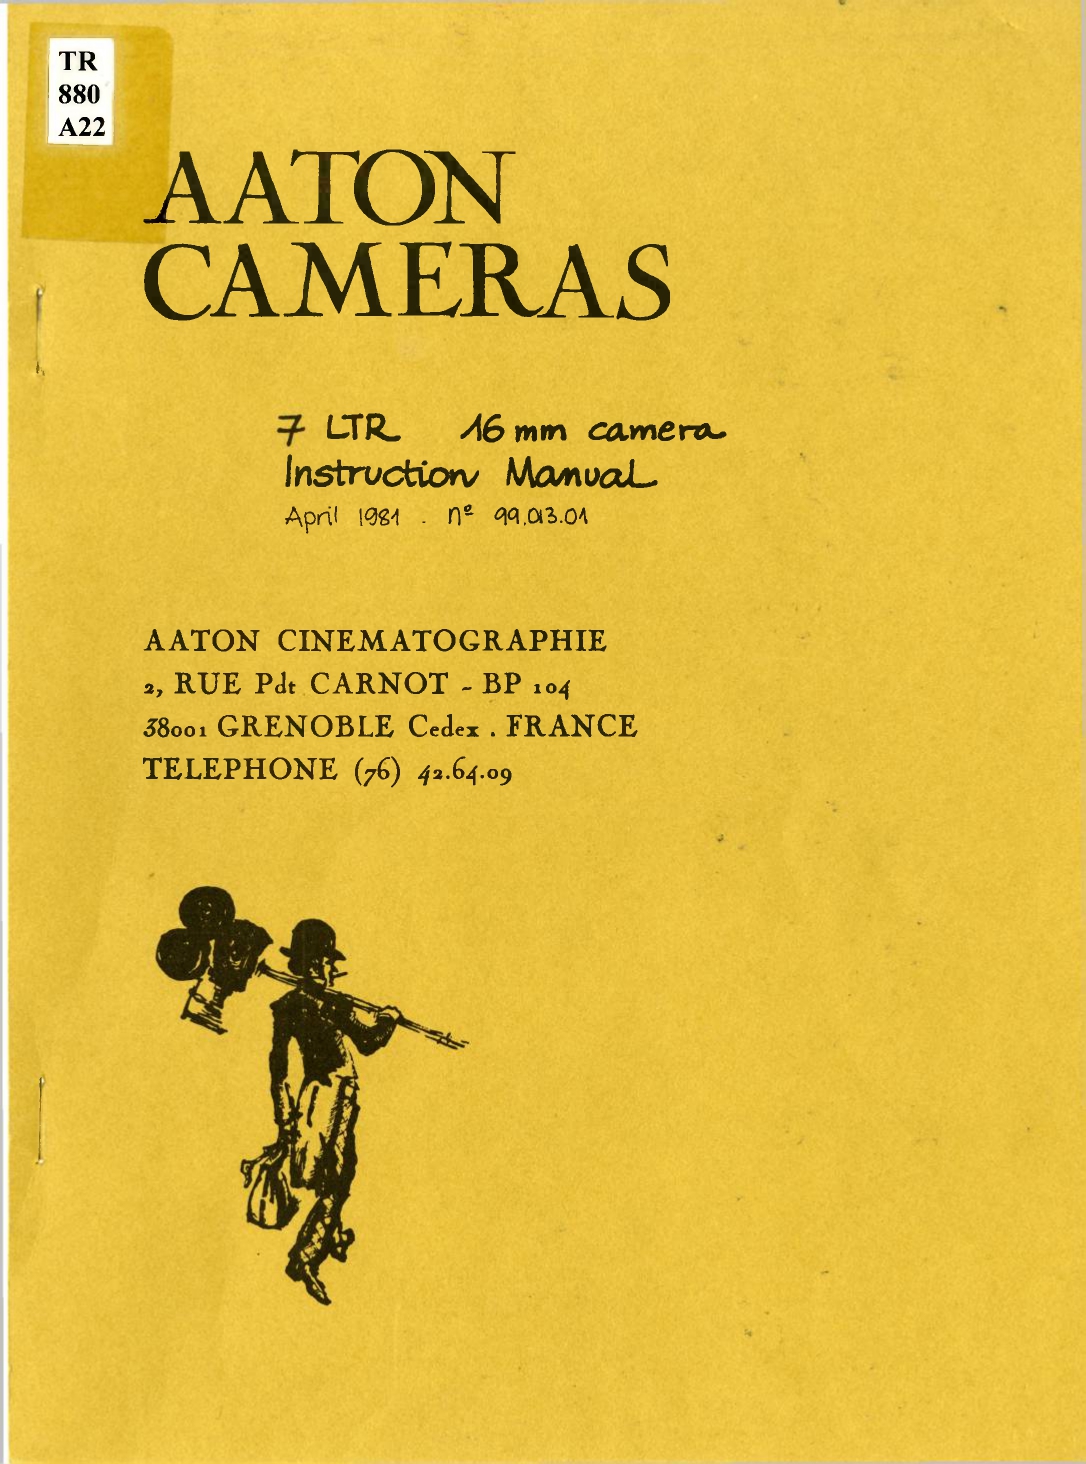 Sommaire du manuel intitulé Aaton Cameras. L’adresse du siège en France est indiquée ainsi que la table des matières. Un homme est dessiné sur le côté, il porte un chapeau melon et une Bell & Howell avec son trépied sur son épaule gauche. Il porte dans sa main droite une mallette.